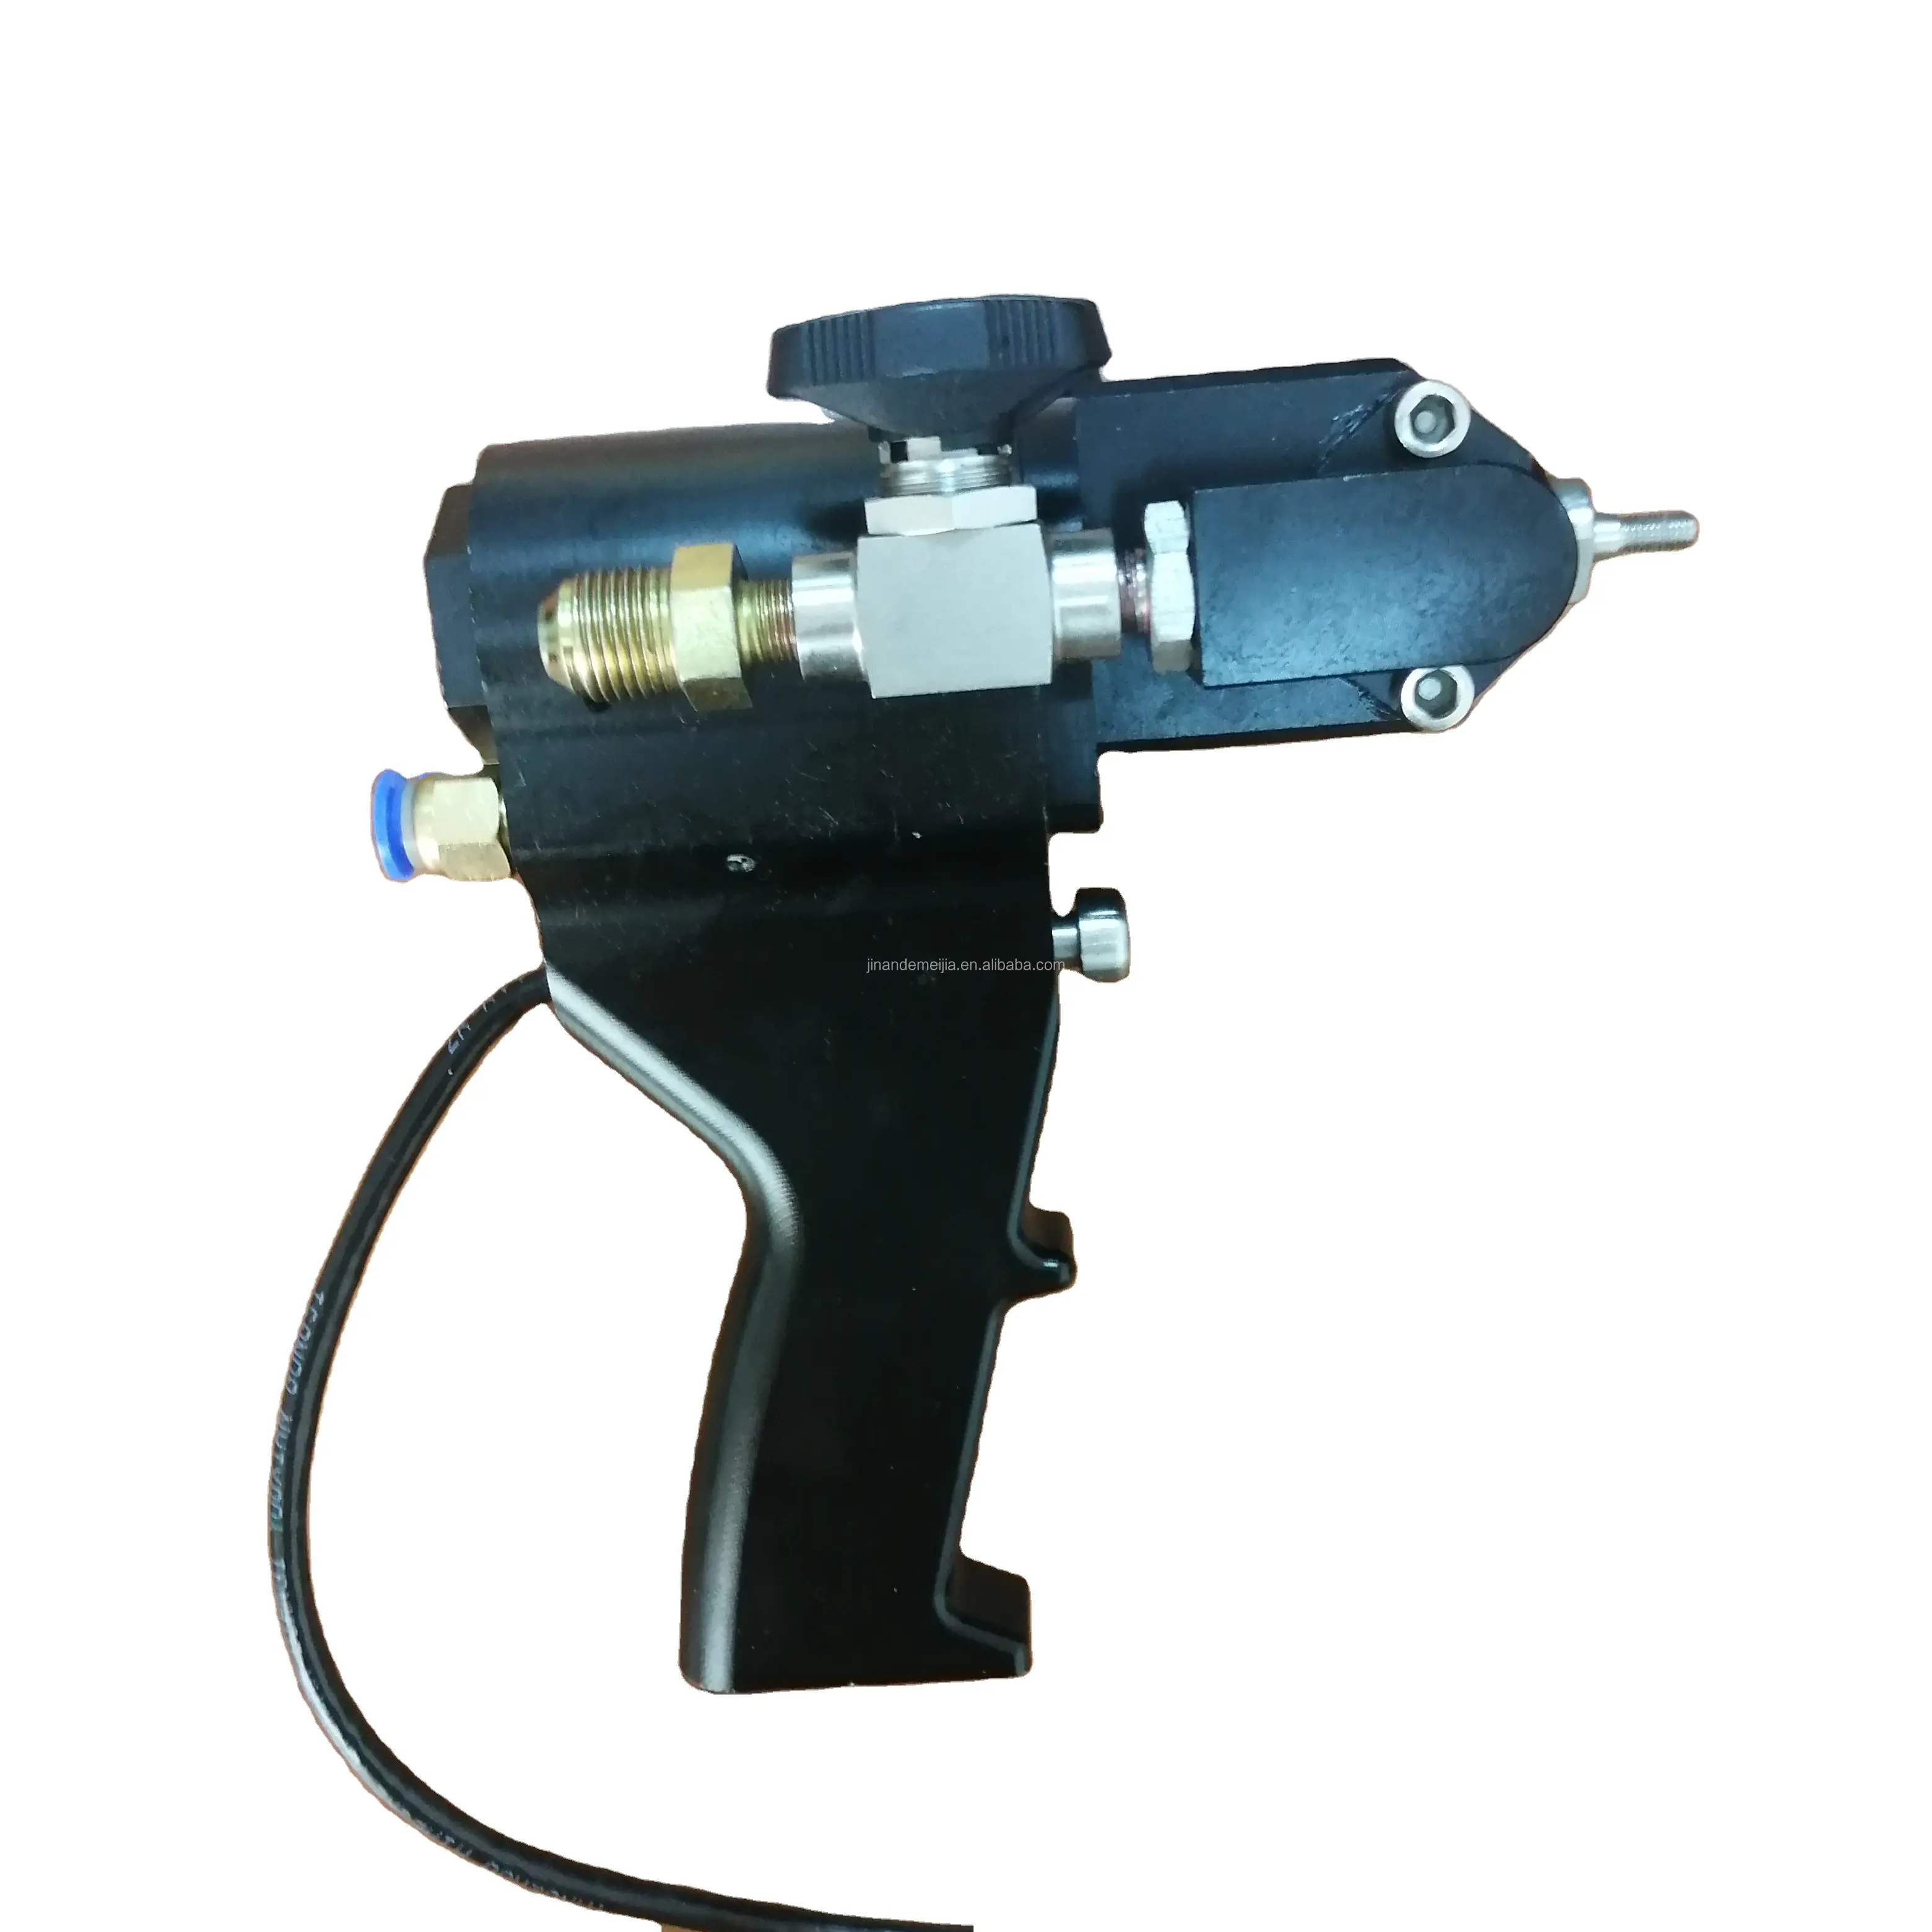 DMJ High quality pu foam spray gun P2 for insulation